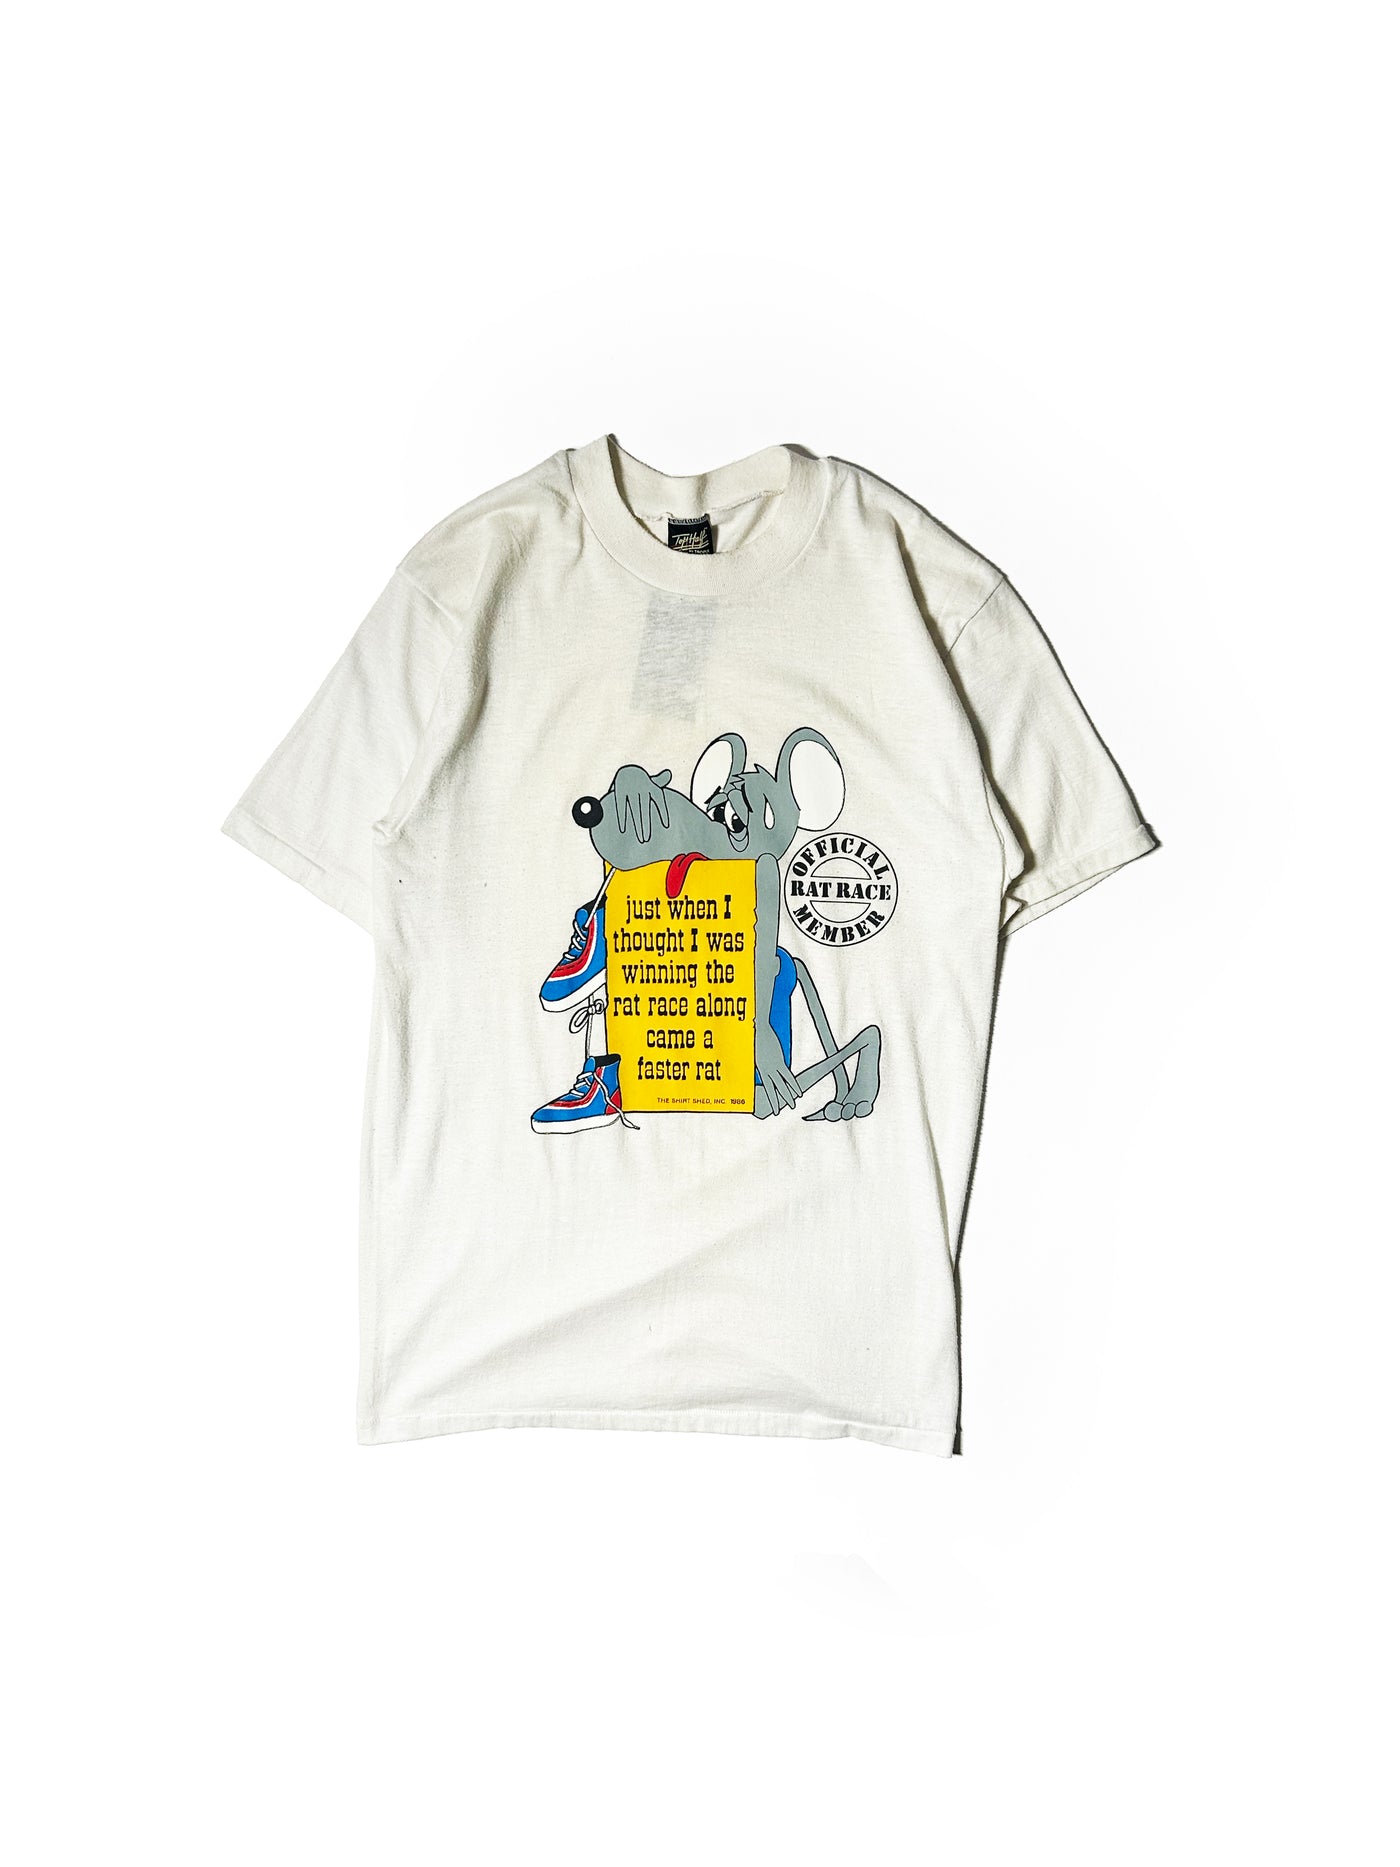 Vintage 1986 Rat Race T-Shirt